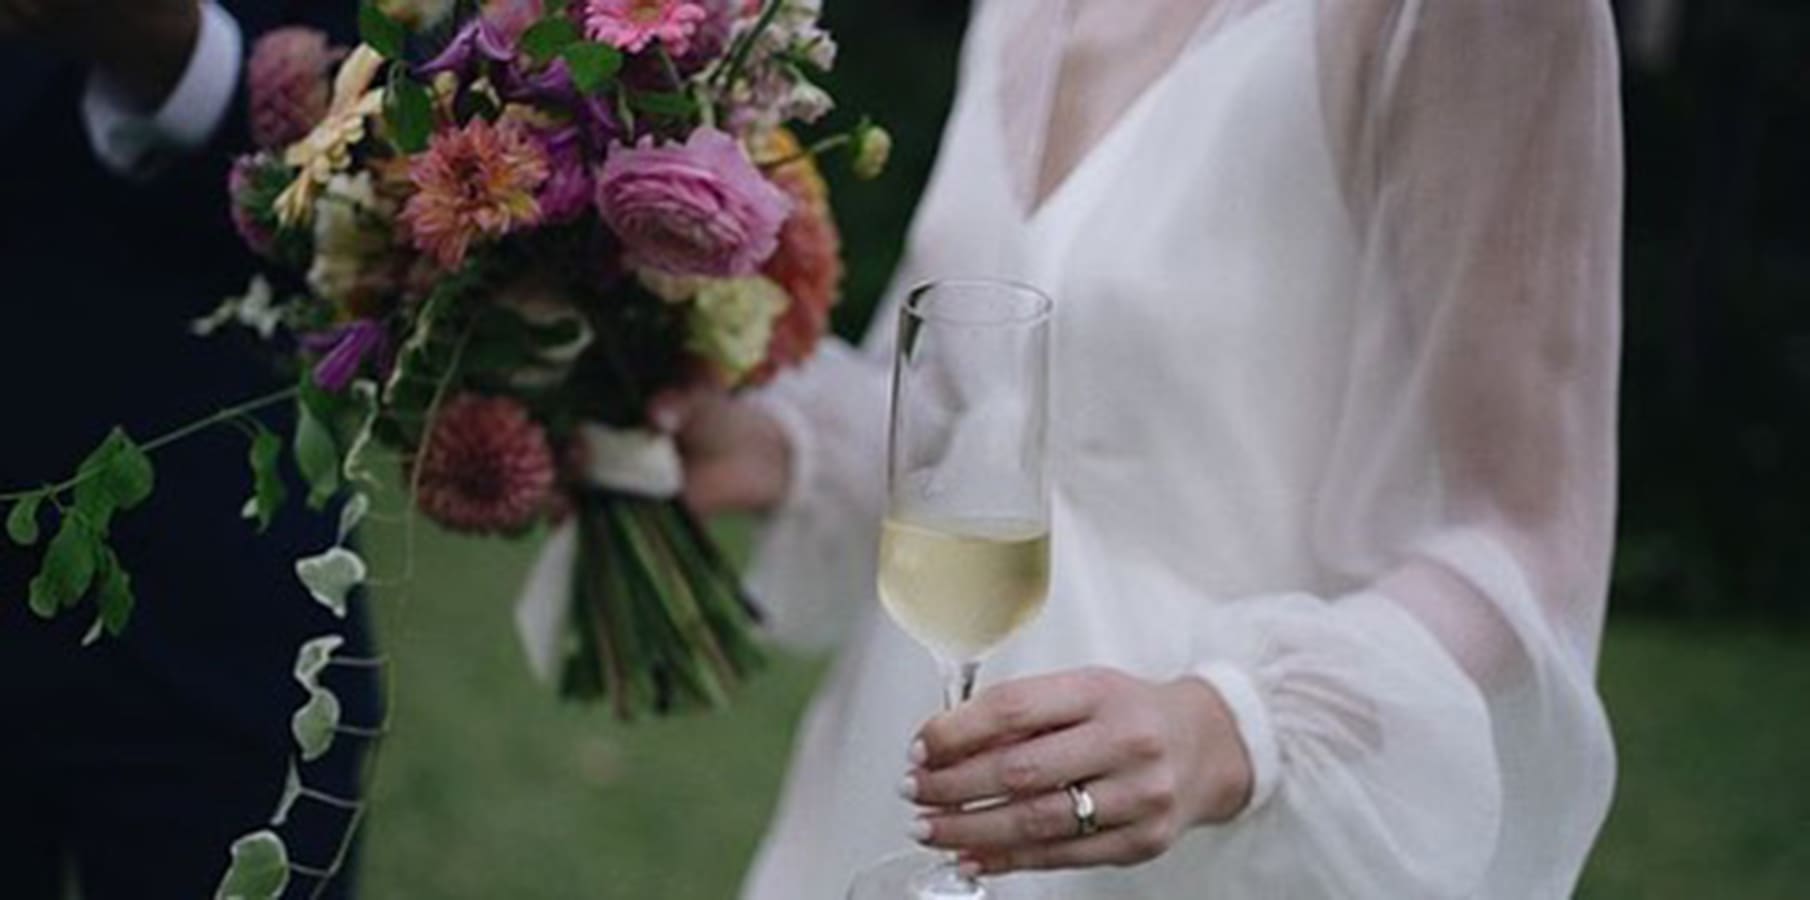 Novia sostiene con gracia su ramo de novia en una mano y una copa de champagne en la otra.